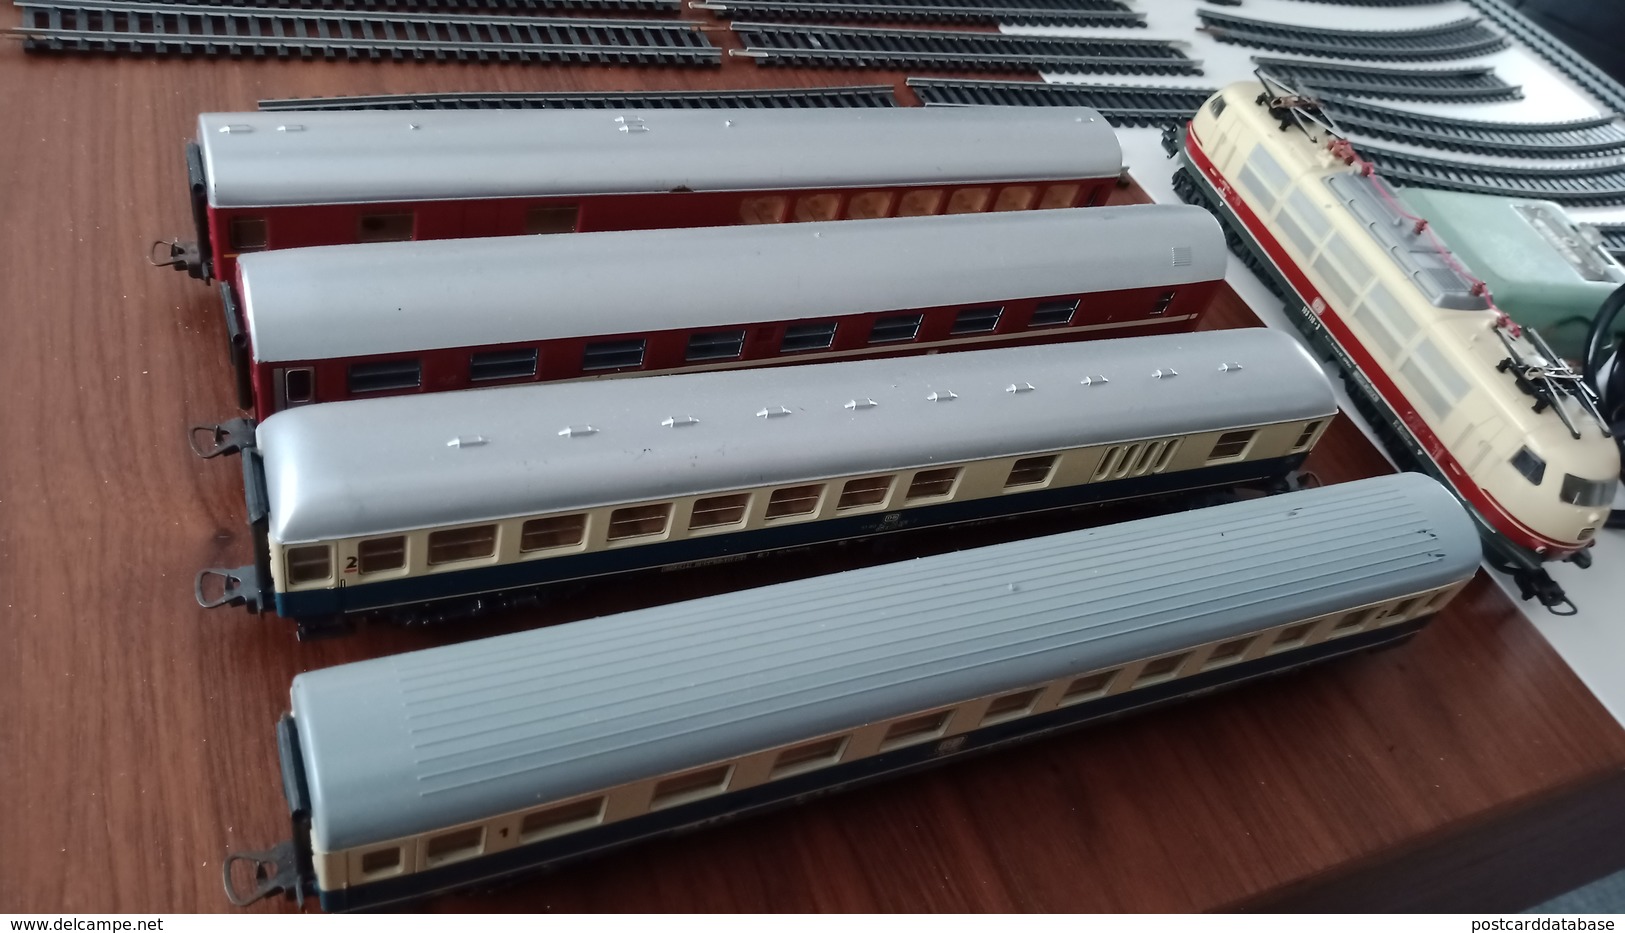 Set of Lima trains - Locomotive 103 110-3, V 200 061, catalogue 638404 1984/1985 Belgium and more